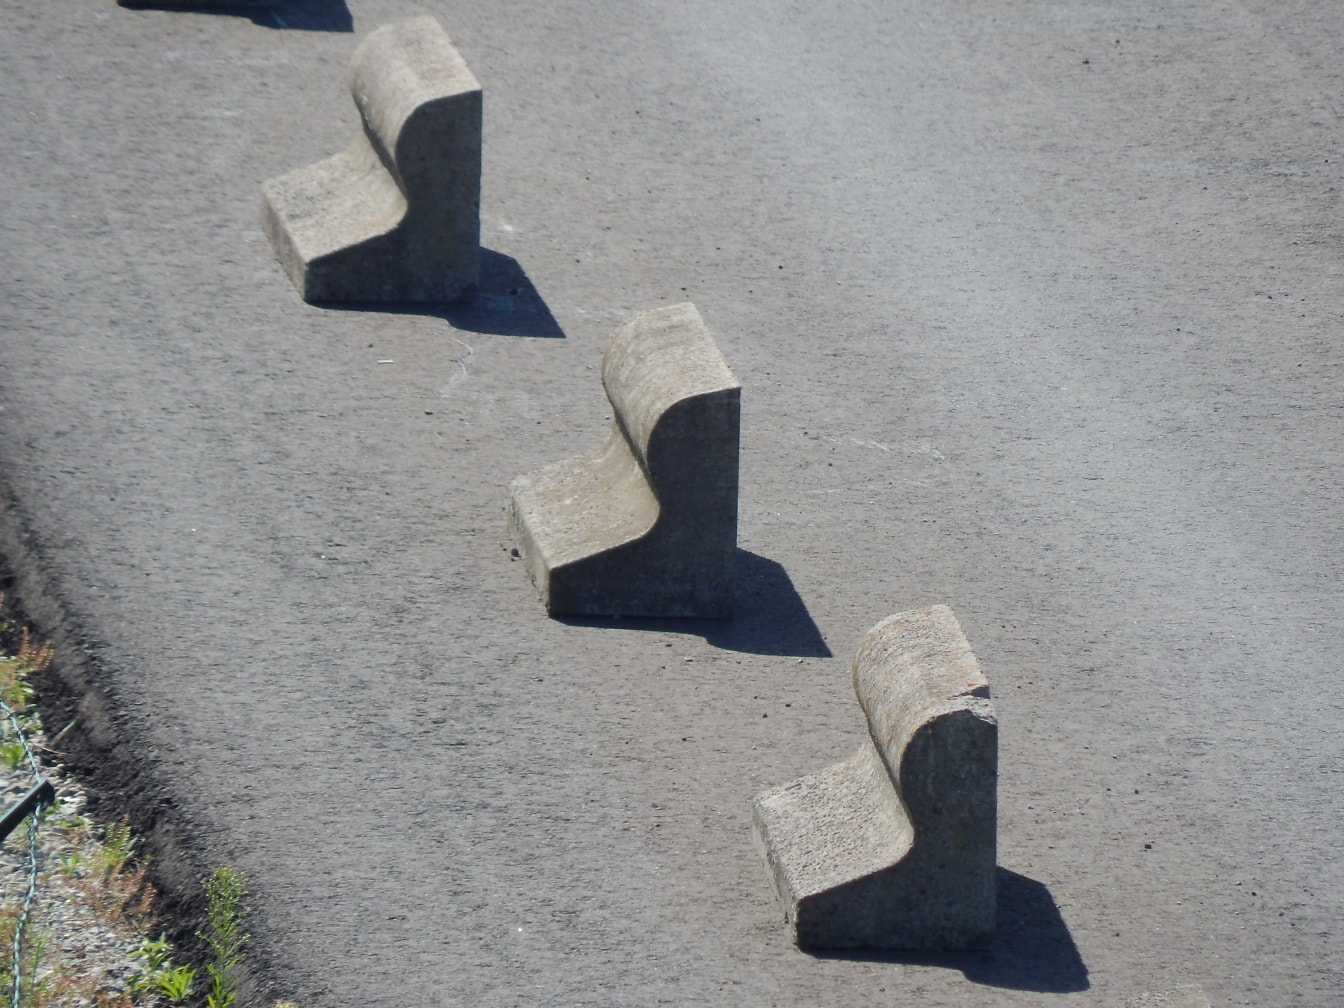 Bloques de forma distorsionada de hormigón gris en carretera asfaltada